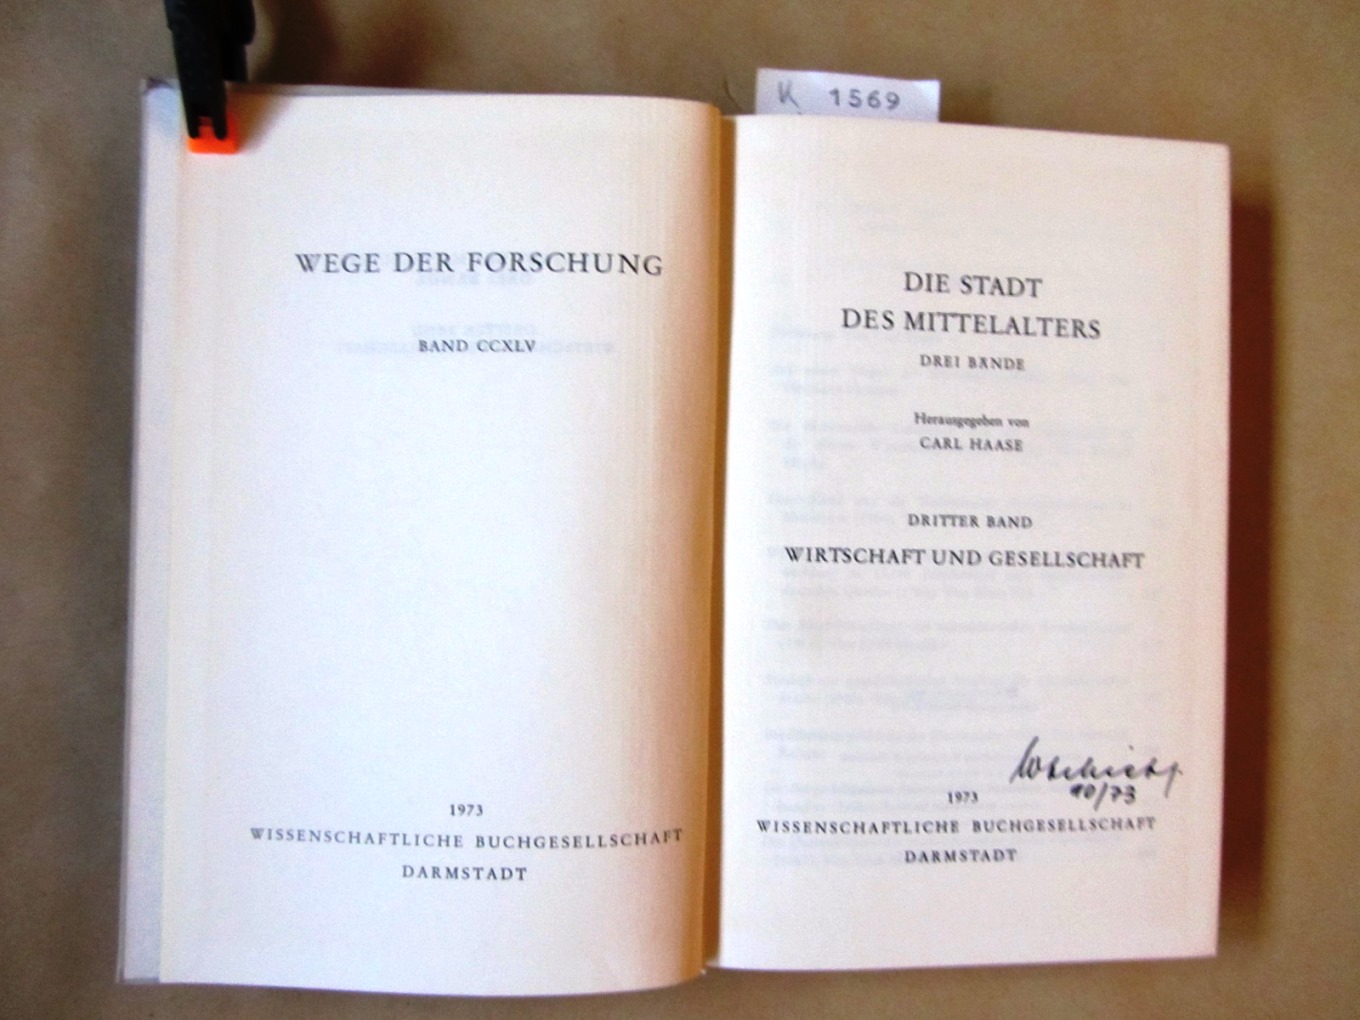 Haase, Carl (Hrsg.):  Die Stadt des Mittelalters. 3. Band (von 3): Wirtschaft und Gesellschaft. ("Wege der Forschung", Band CCXLV) 